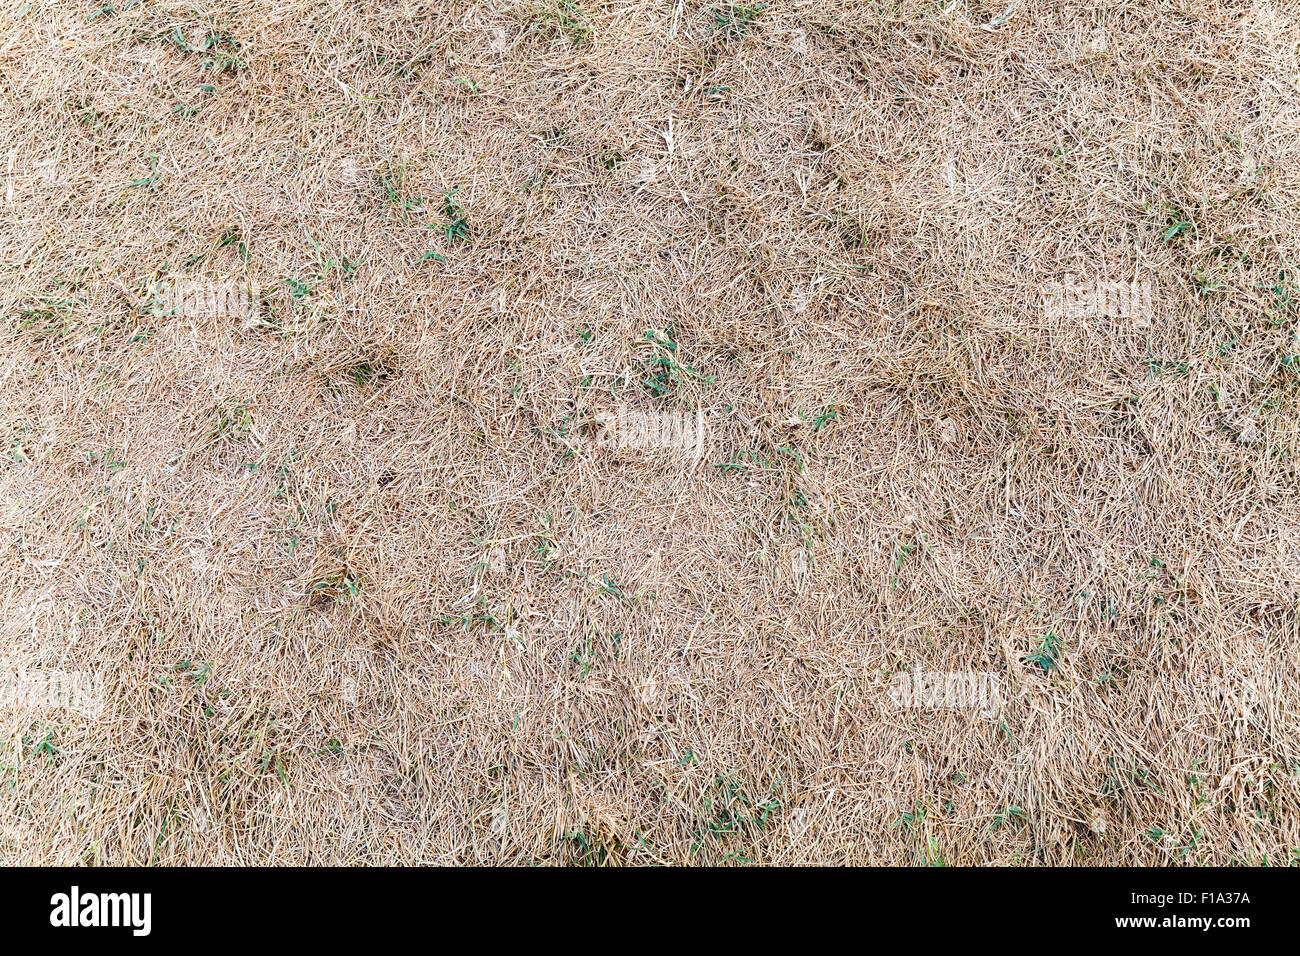 Hierba seca con plantas verdes, fondo textura fotográfica Foto de stock